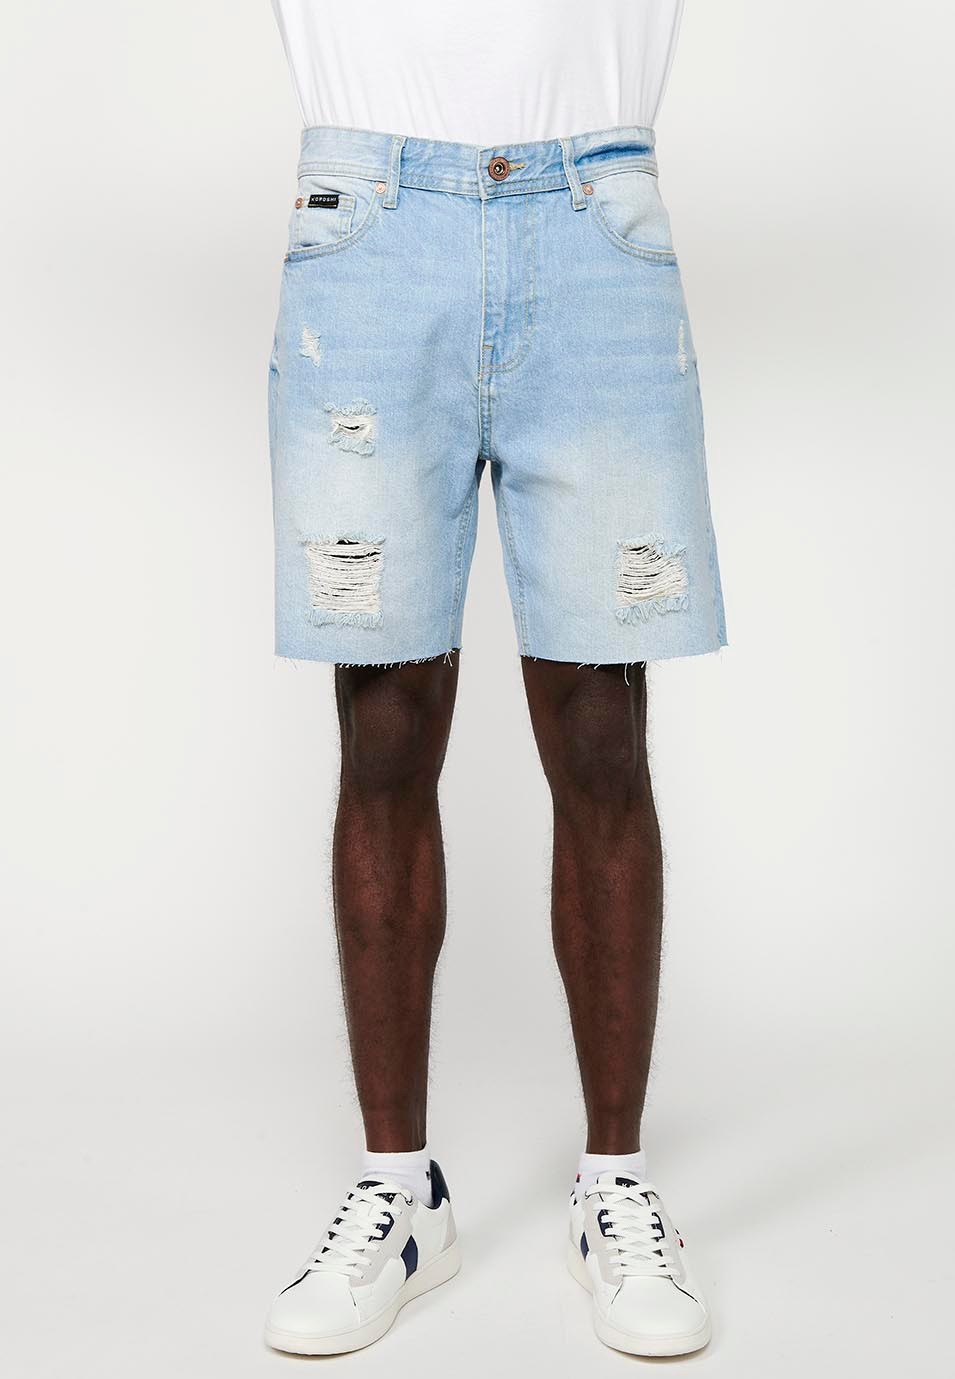 Comfort Fit Denim Bermuda Shorts, light blue color for men